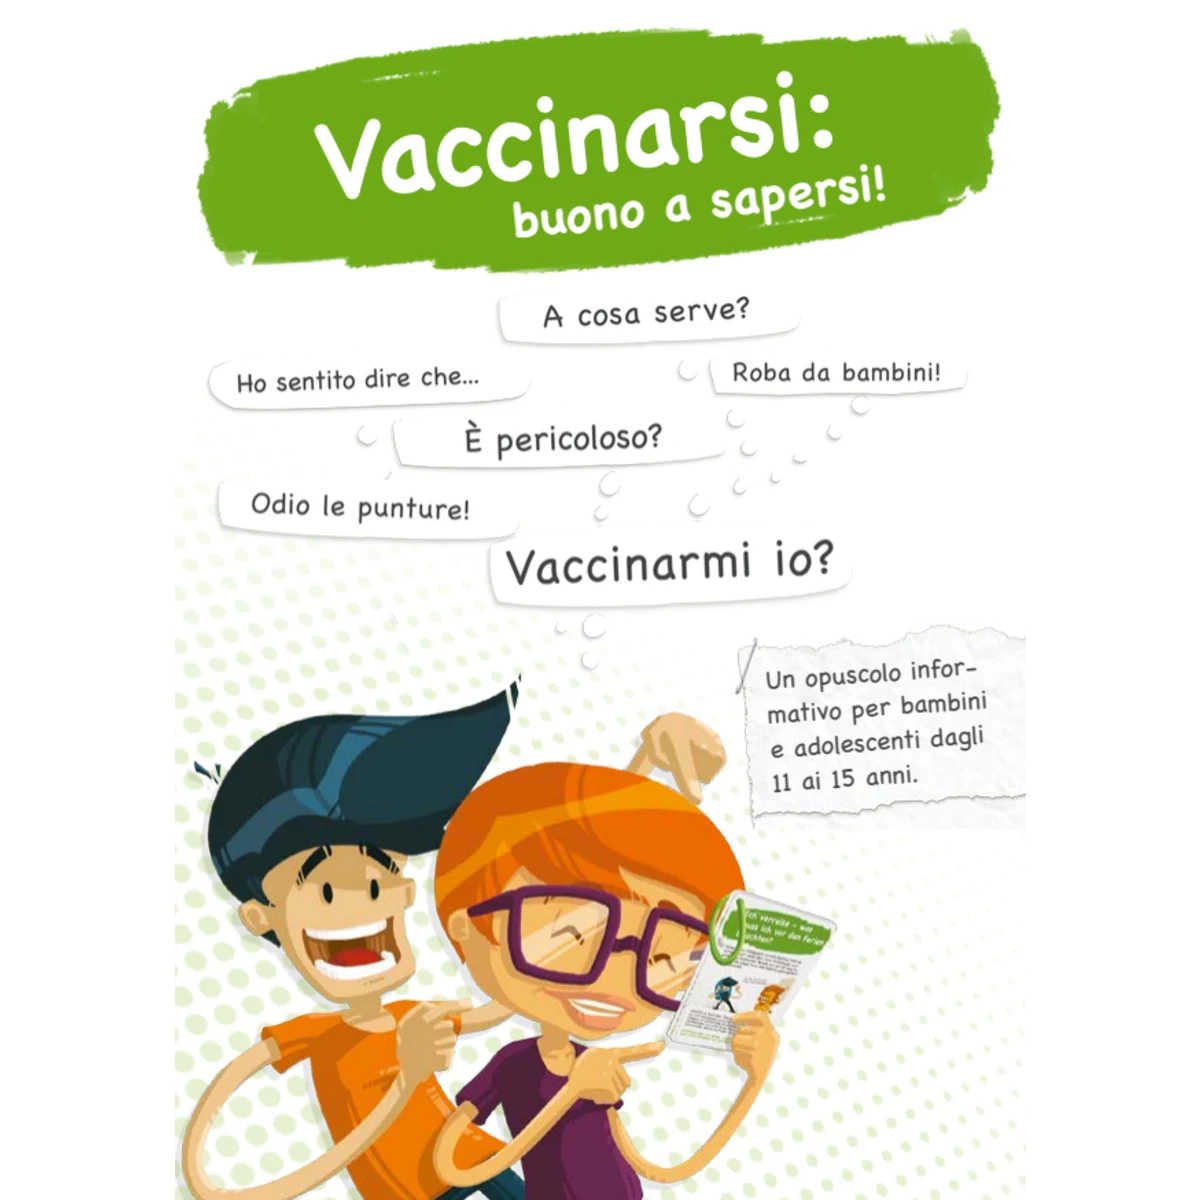 Vaccinarsi: buona a sapersi!